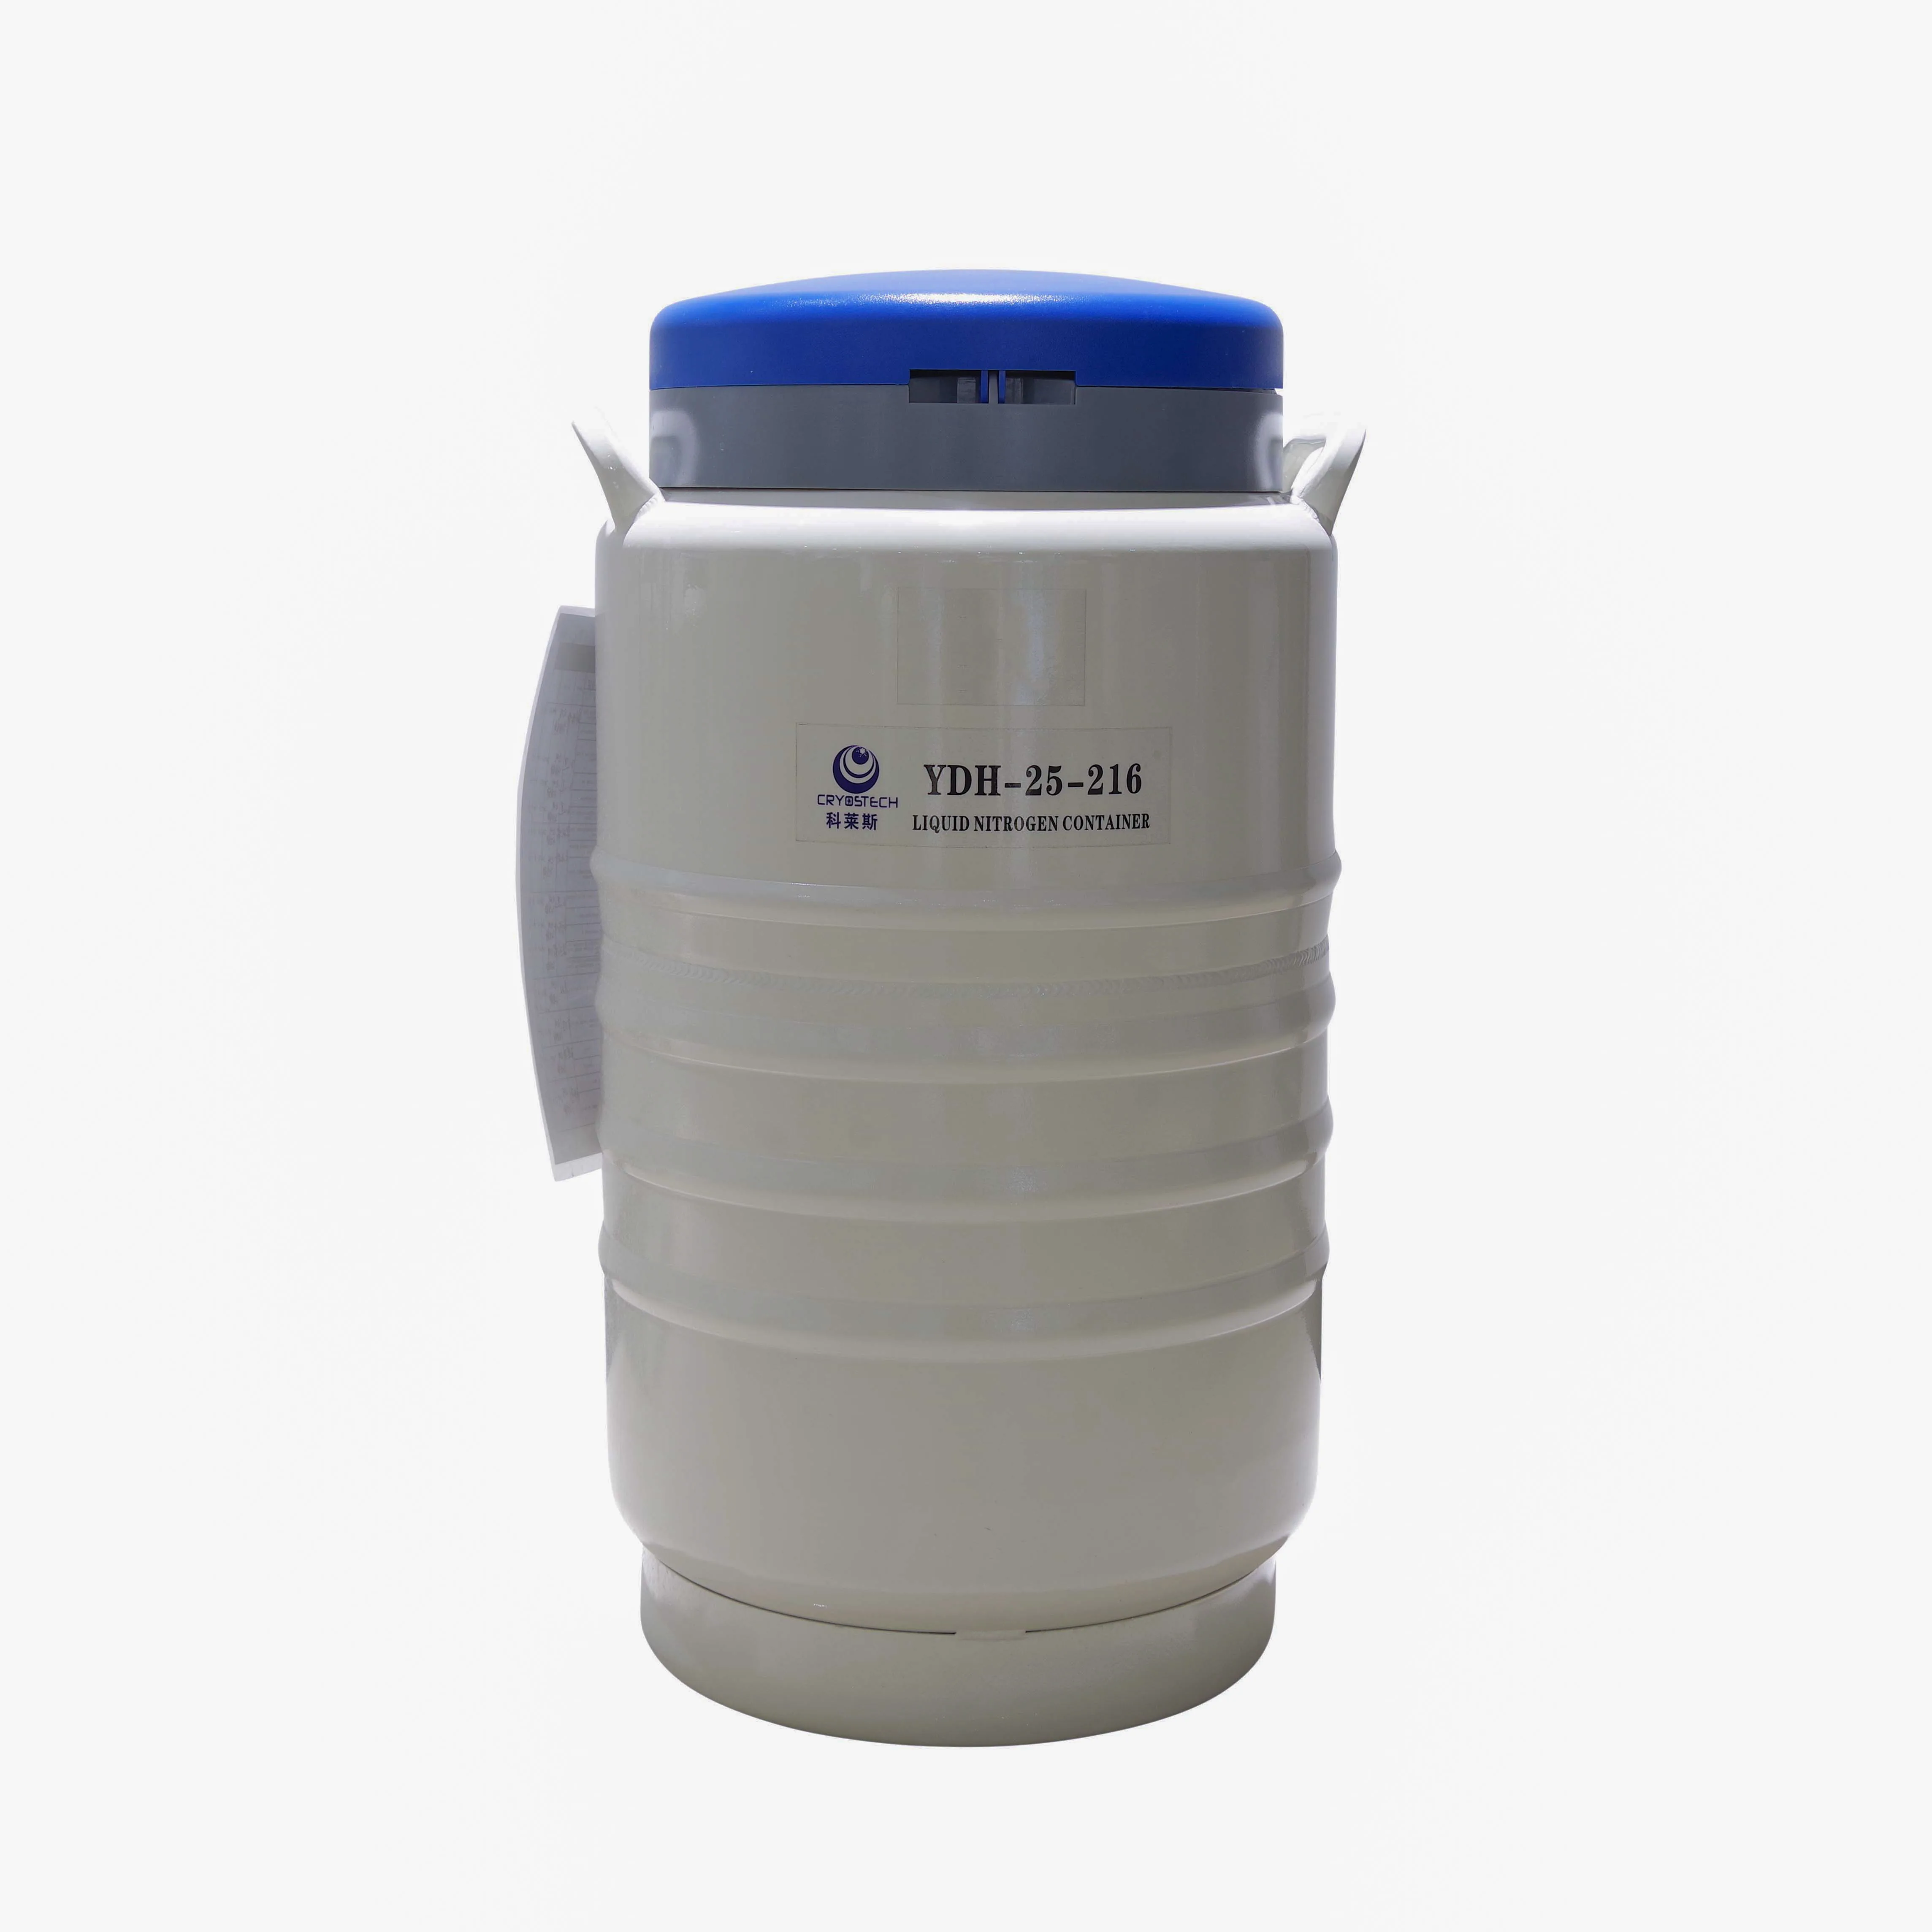 Liquid Nitrogen Container for kitchen